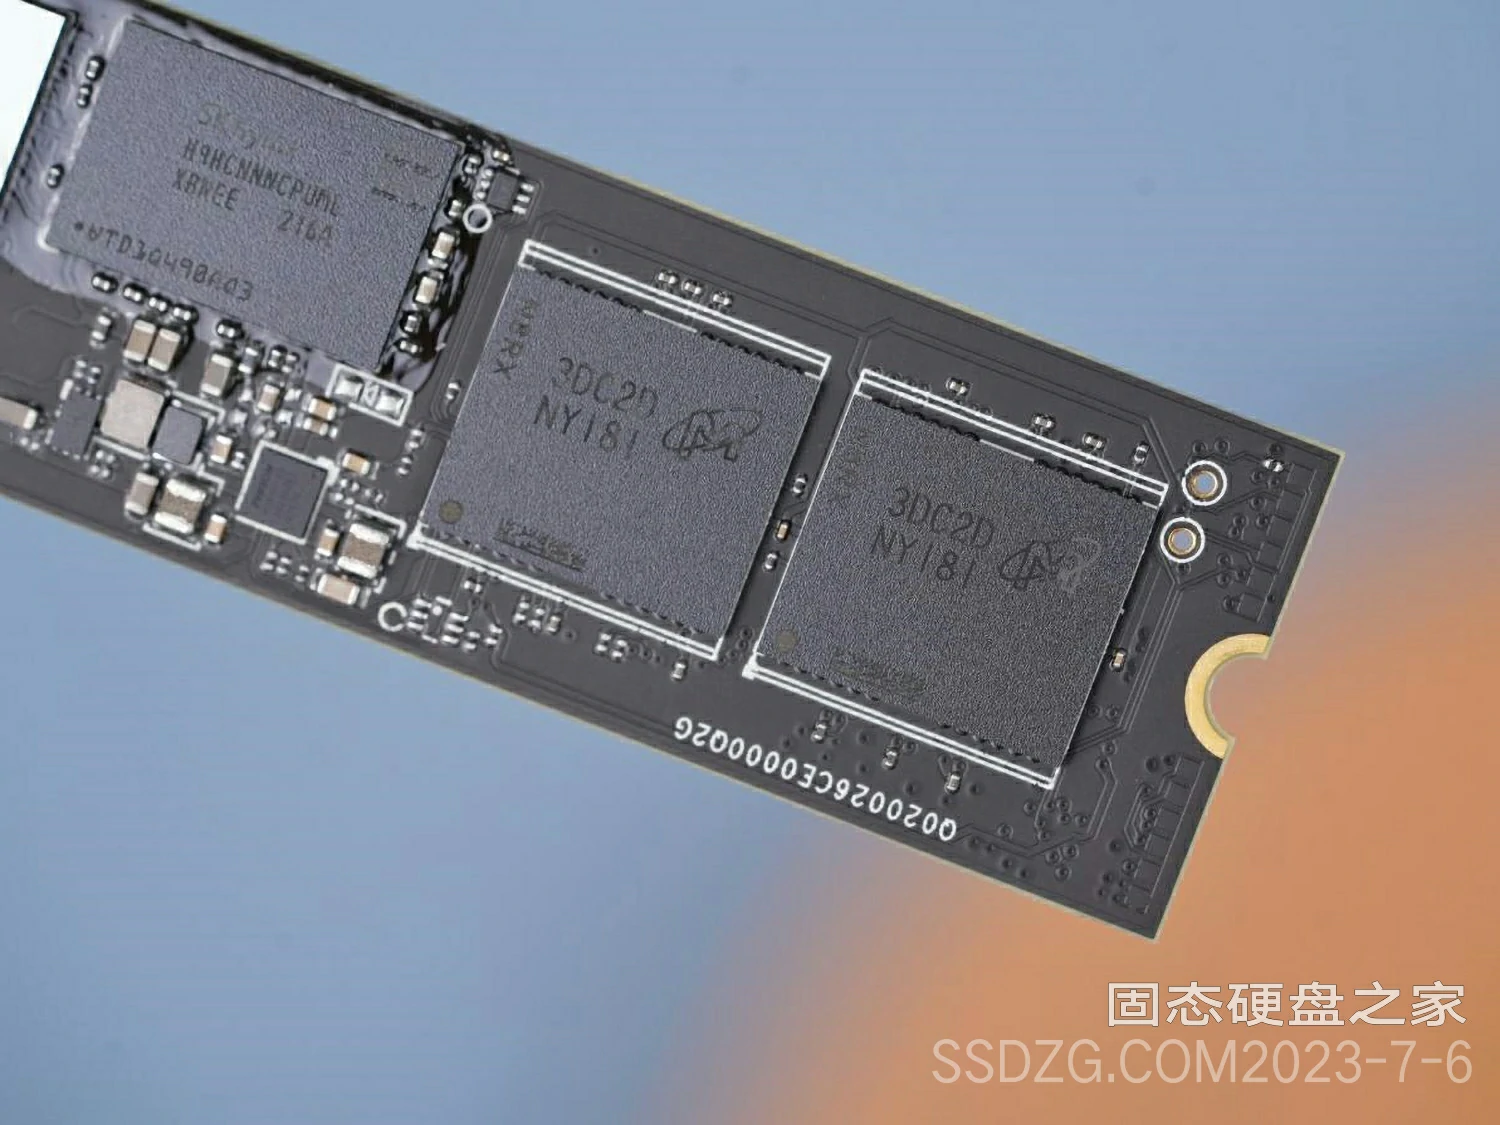 希捷酷玩 540 PCIe 5.0 固态硬盘即将上市：首款PCIE 5.0固态硬盘